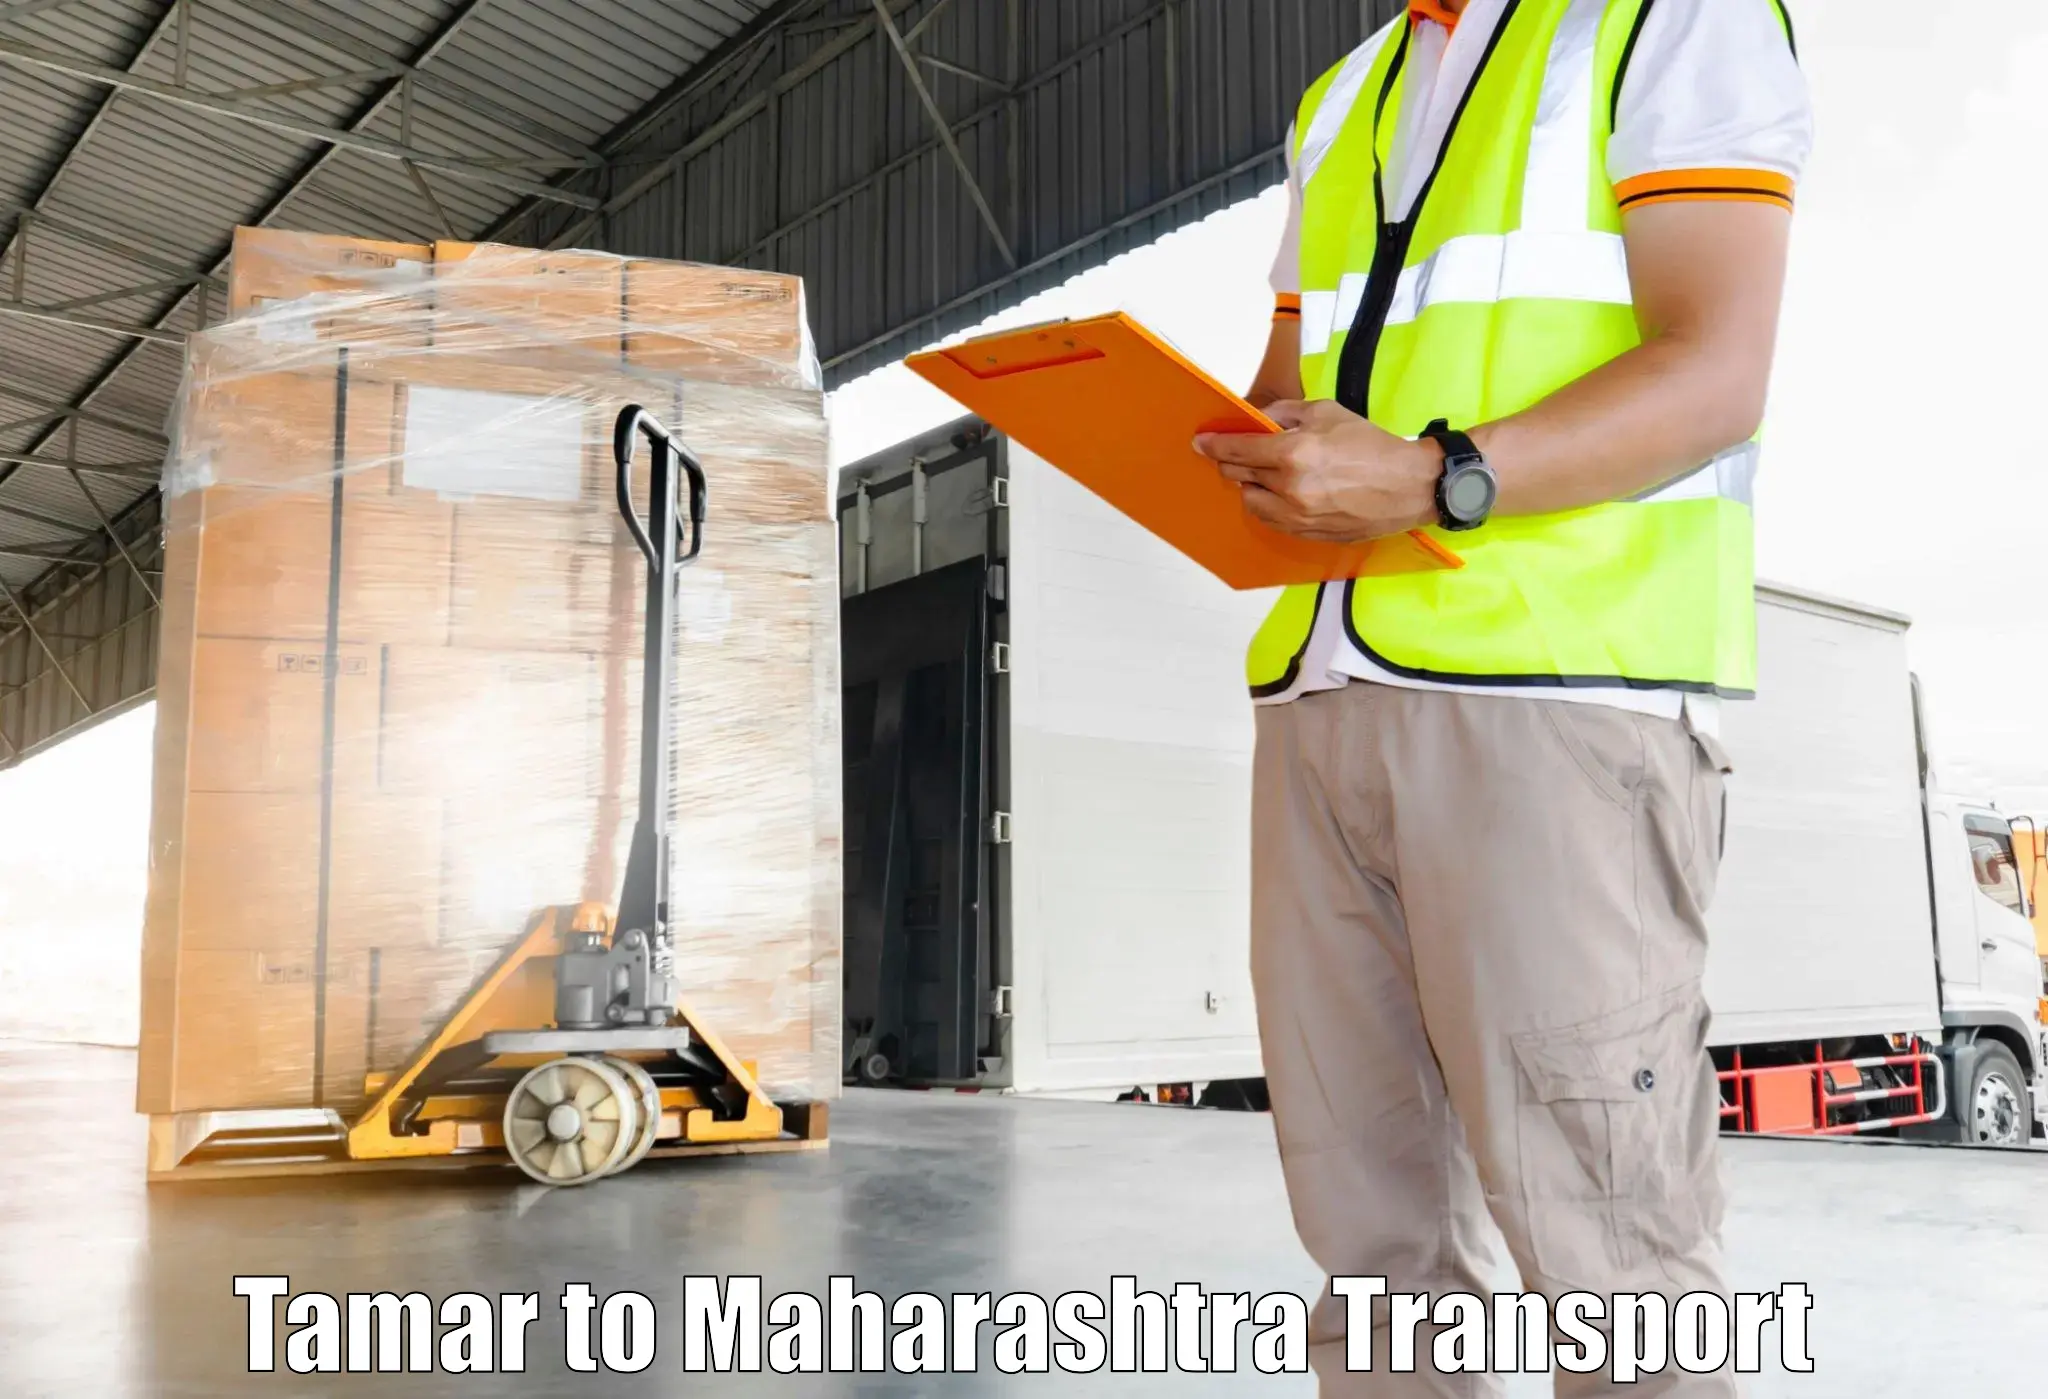 Daily parcel service transport Tamar to IIT Mumbai